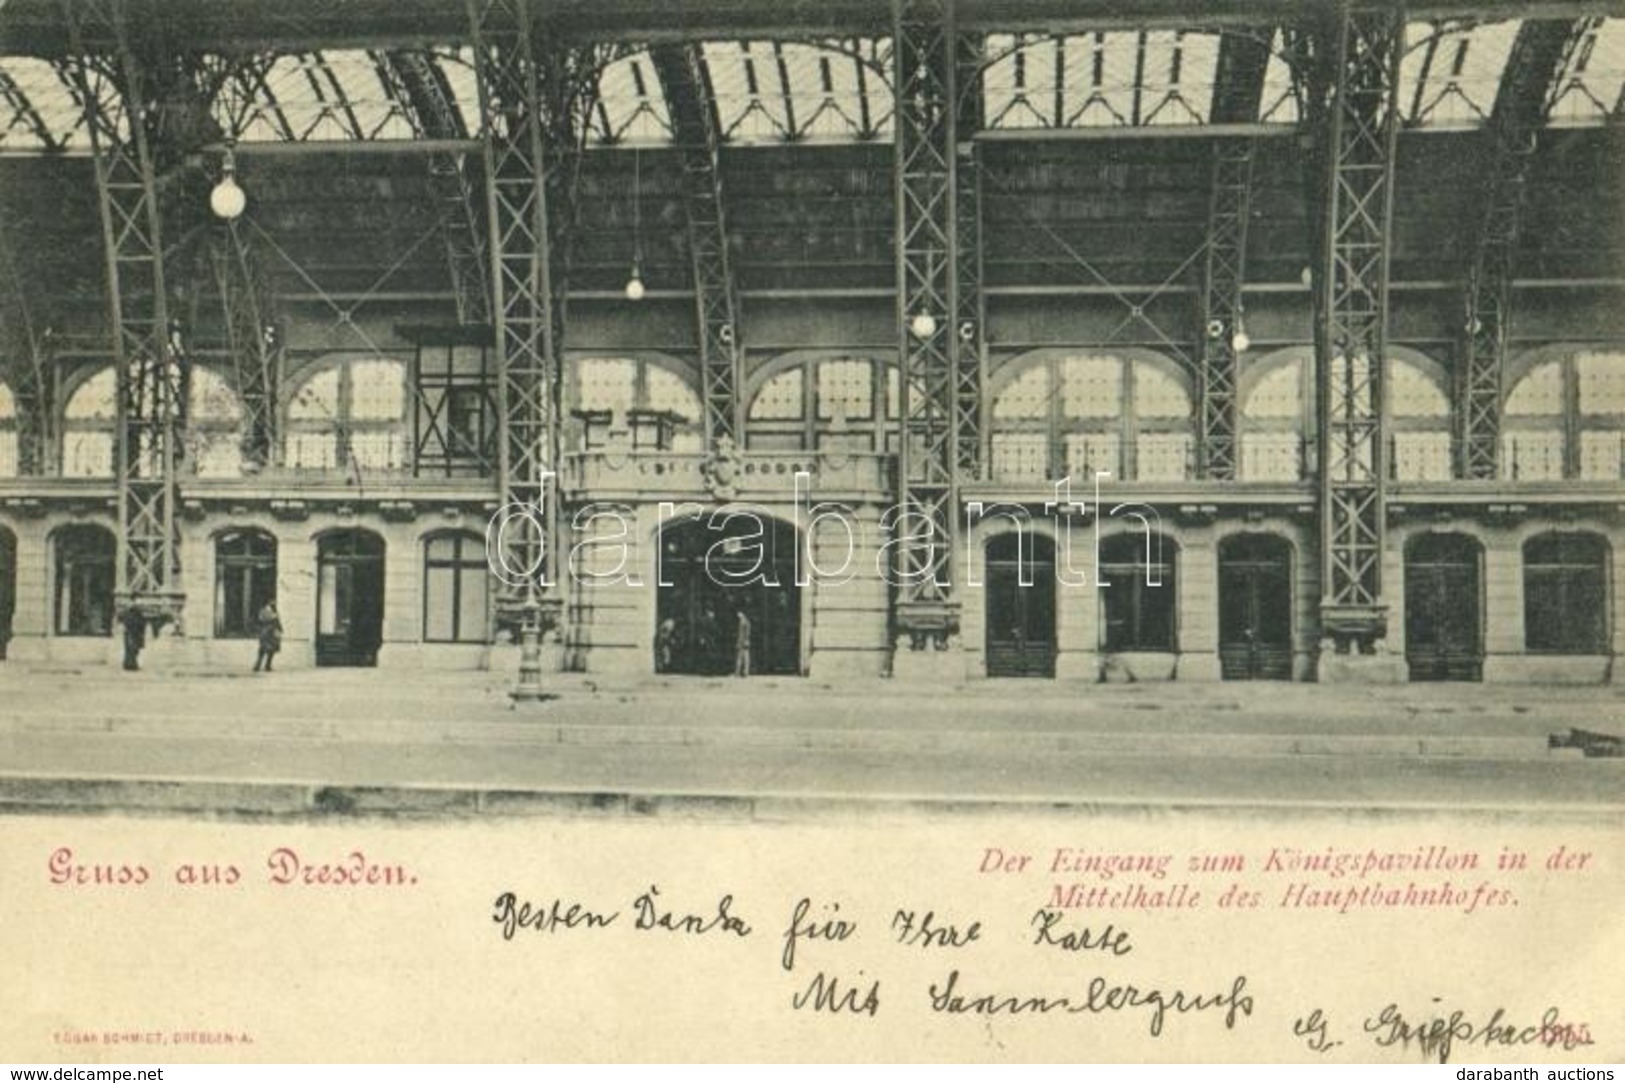 T2 1898 Dresden, Der Eingang Zum Königspavillon In Der Mittelhalle Des Hauptbahnhofes / Railway Station Interior, King's - Non Classés